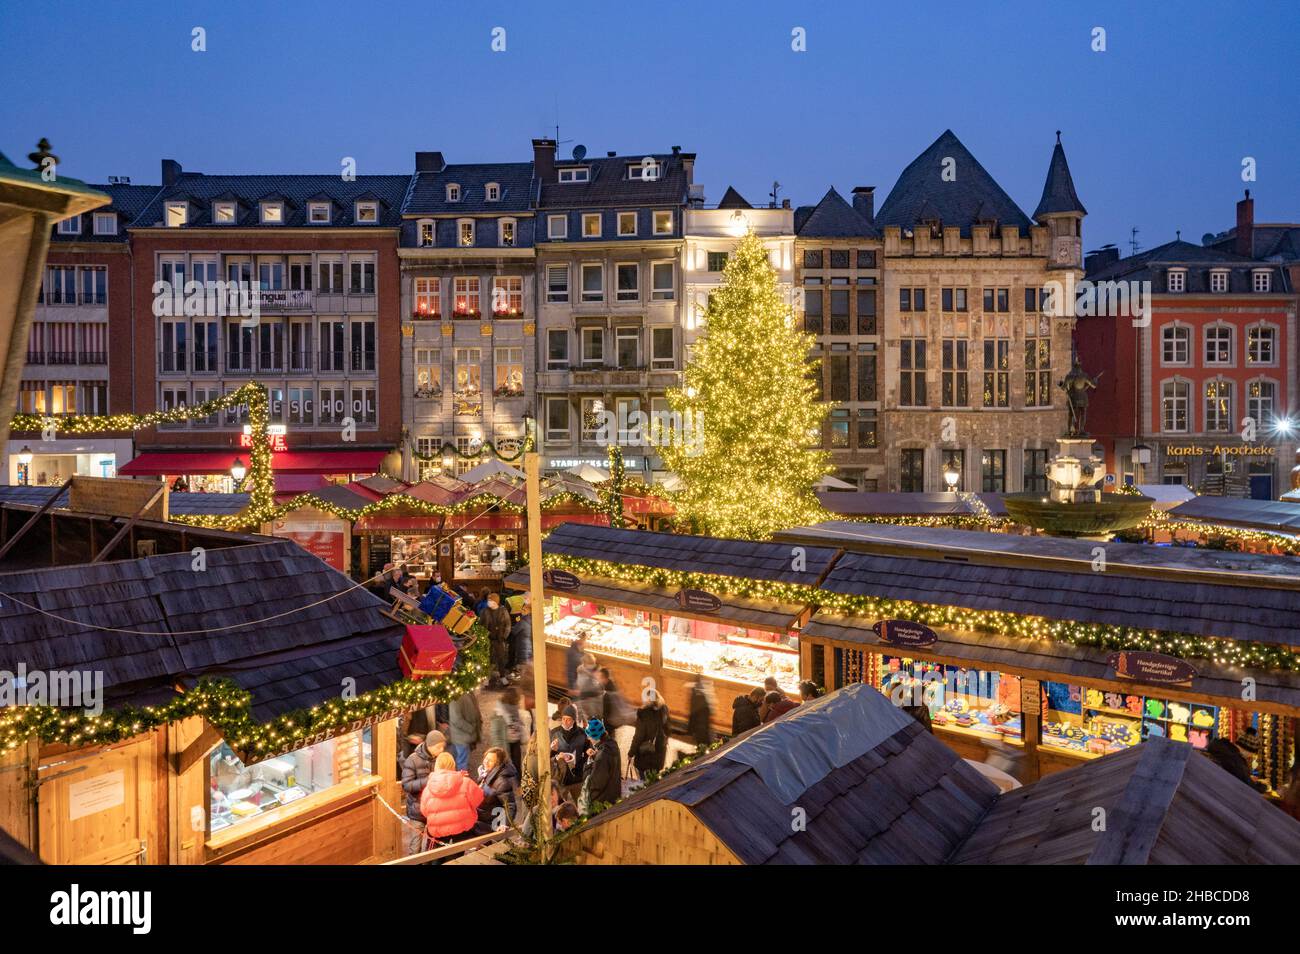 Aachen -Der Aachener Weihnachtsmarkt lockt jährlich Hunderttausende Besucher auf die Plätze und in die Gassen rund um den Aachener Dom und das Rathaus Stock Photo